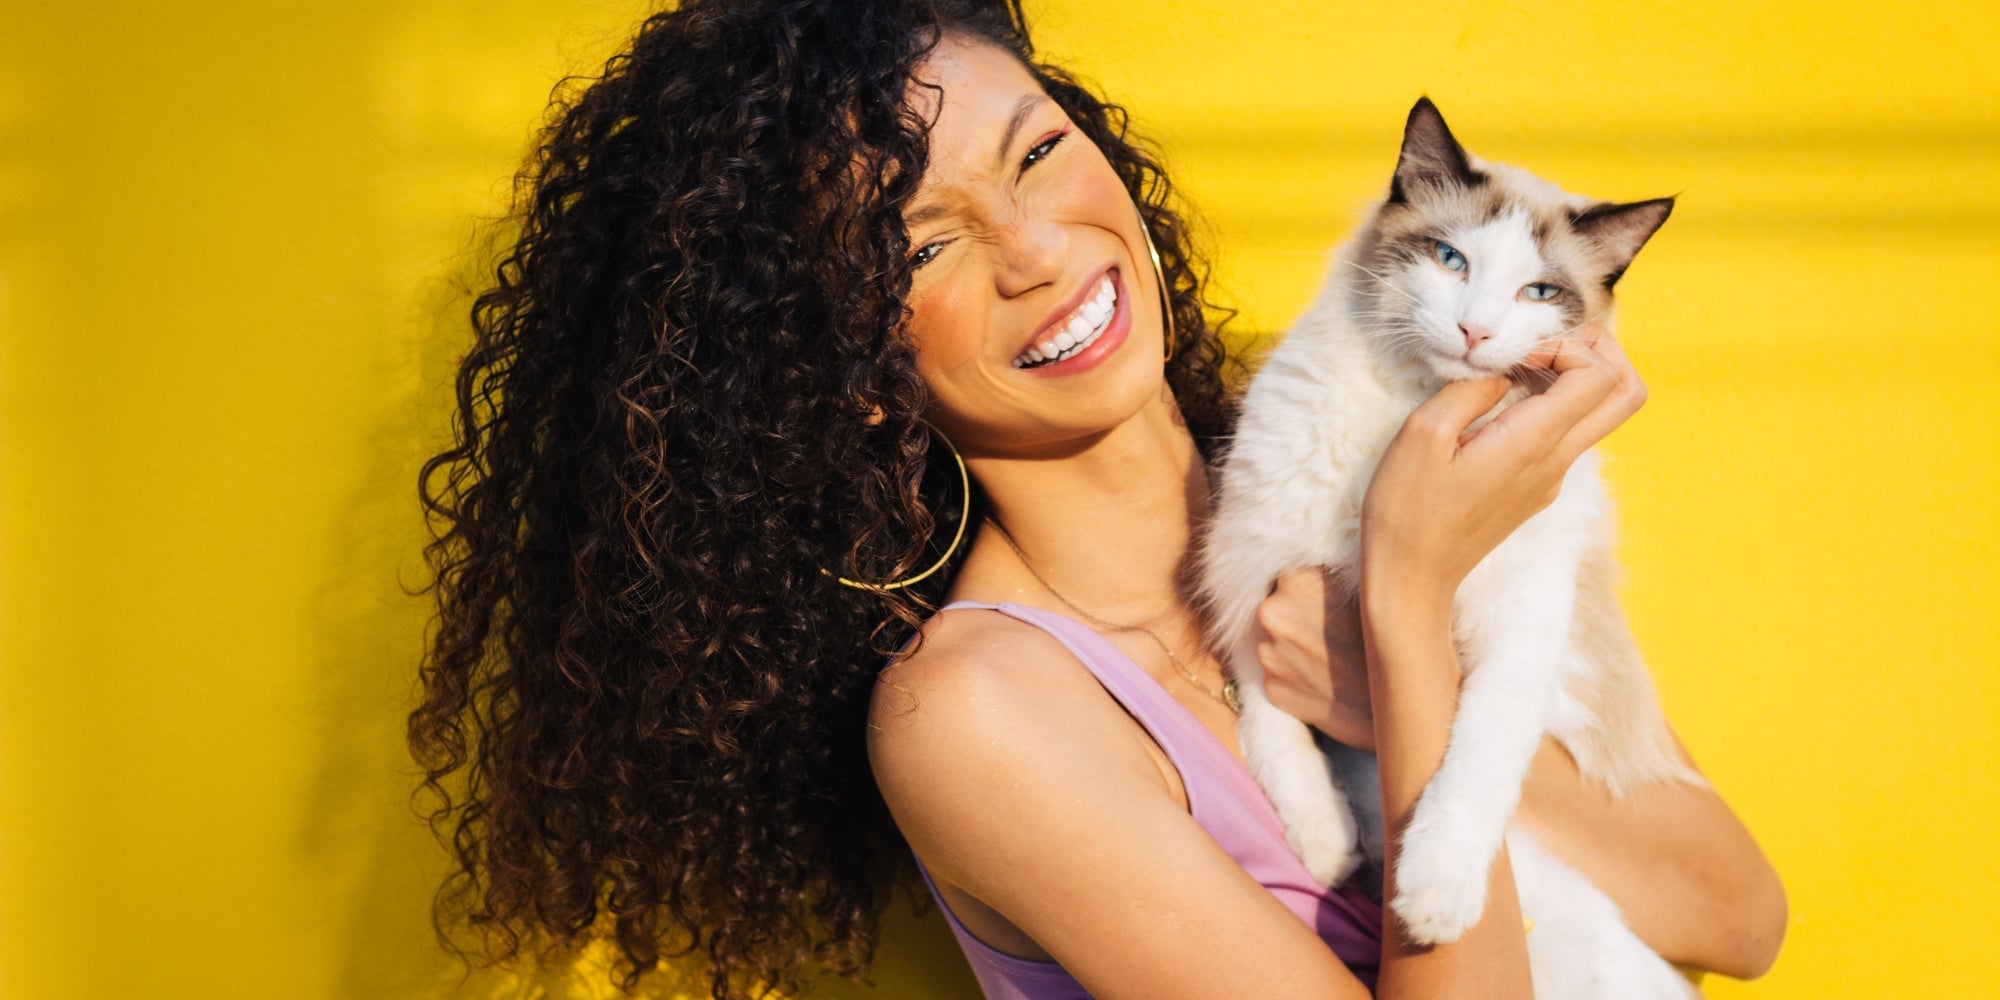 Mujer sonriente con un gato en brazos